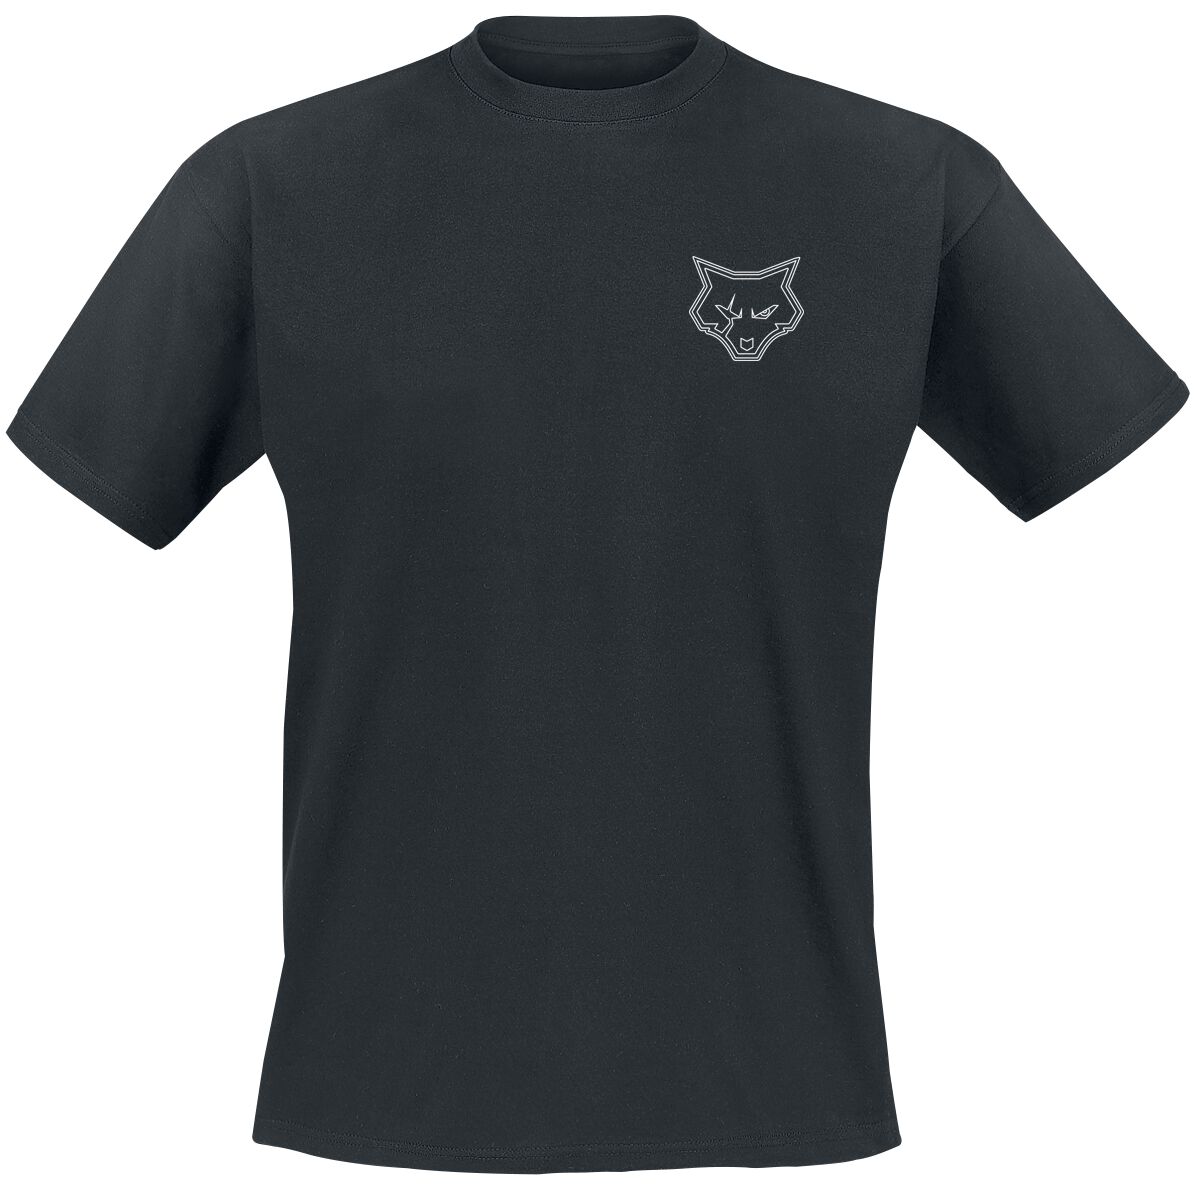 Bad Wolves T-Shirt - Bad F*cking Wolves - S bis 4XL - für Männer - Größe 4XL - schwarz  - Lizenziertes Merchandise!